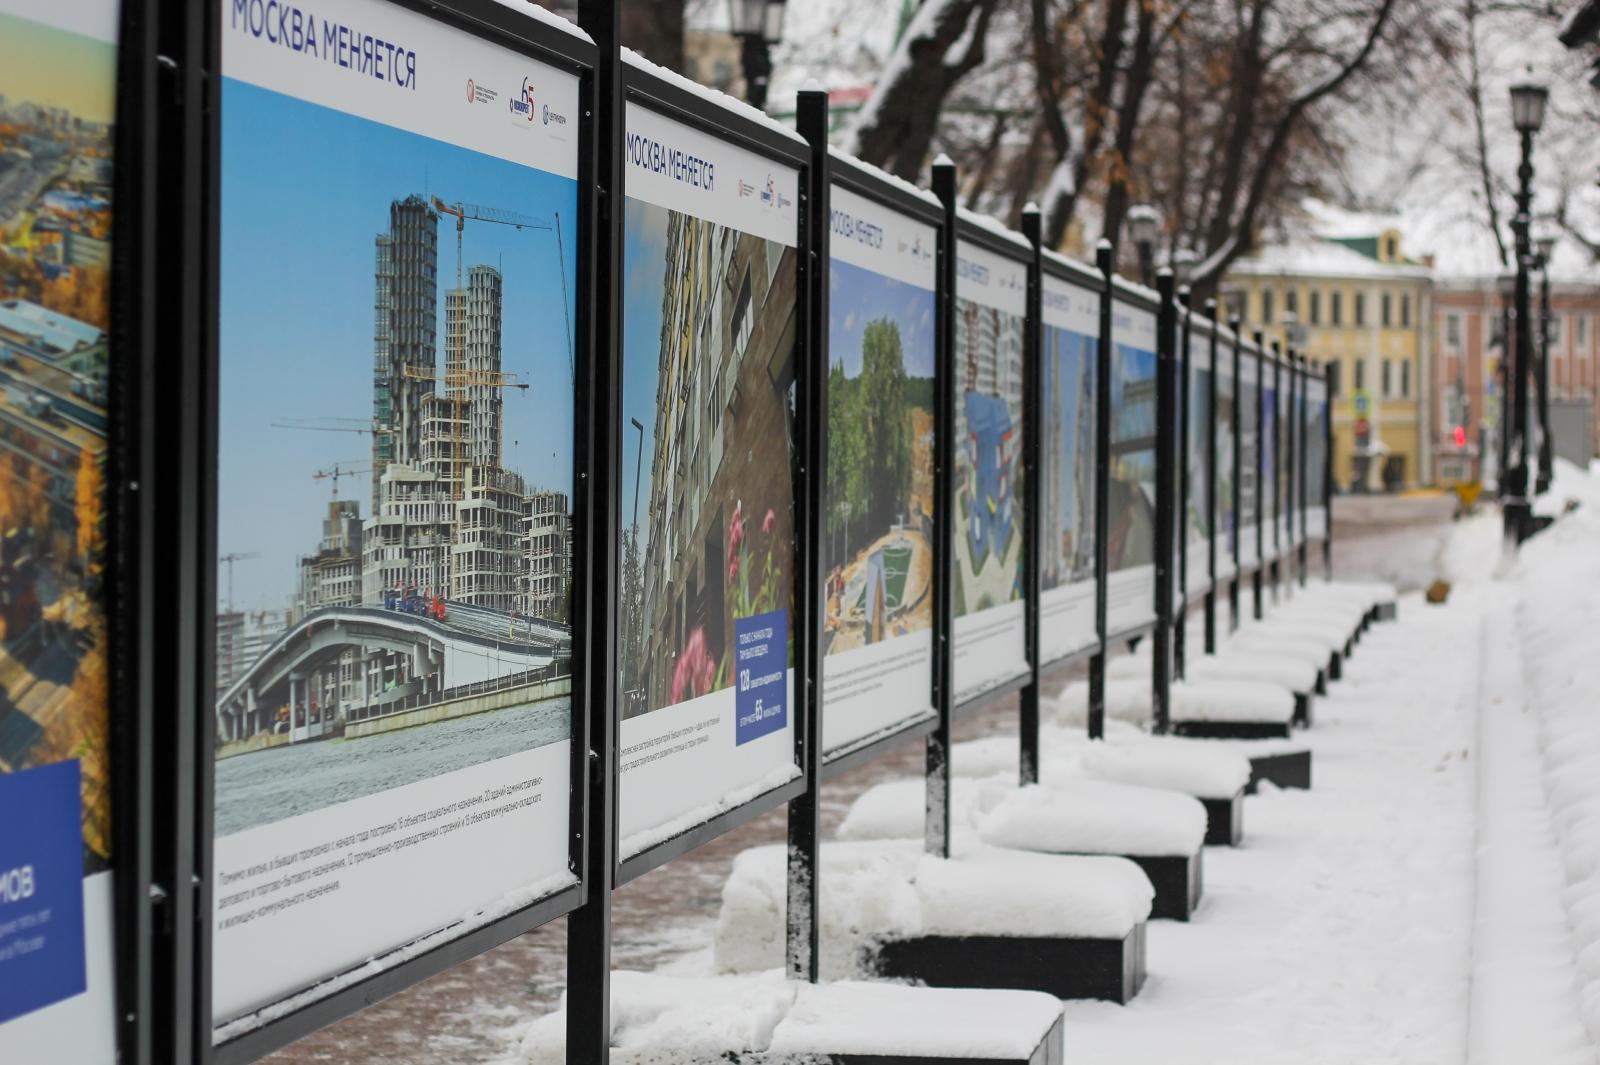 Выставка «Москва меняется» об итогах работы Стройкомплекса проходит на Страстном бульваре           